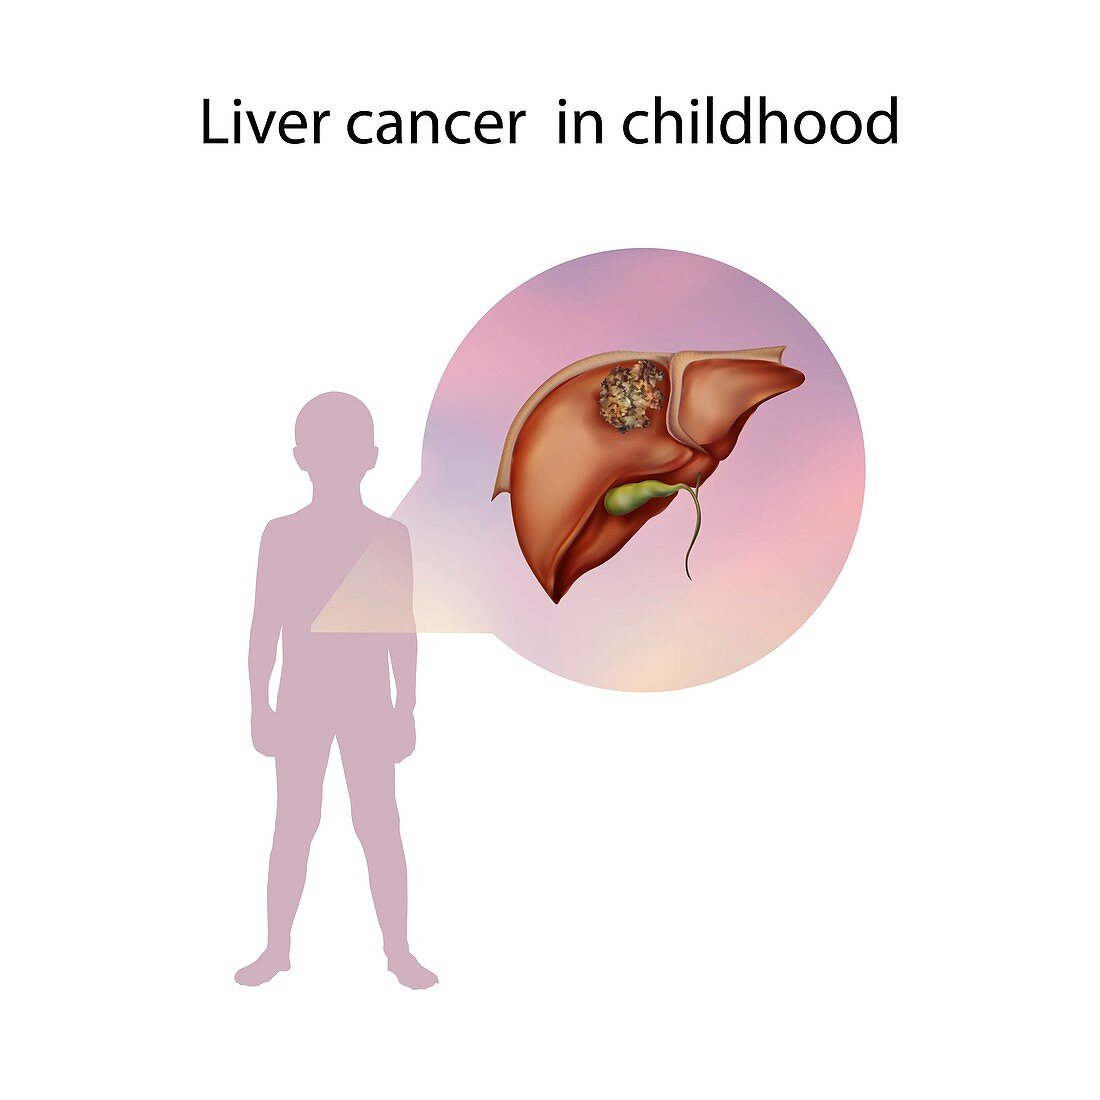 Liver cancer in childhood,illustration